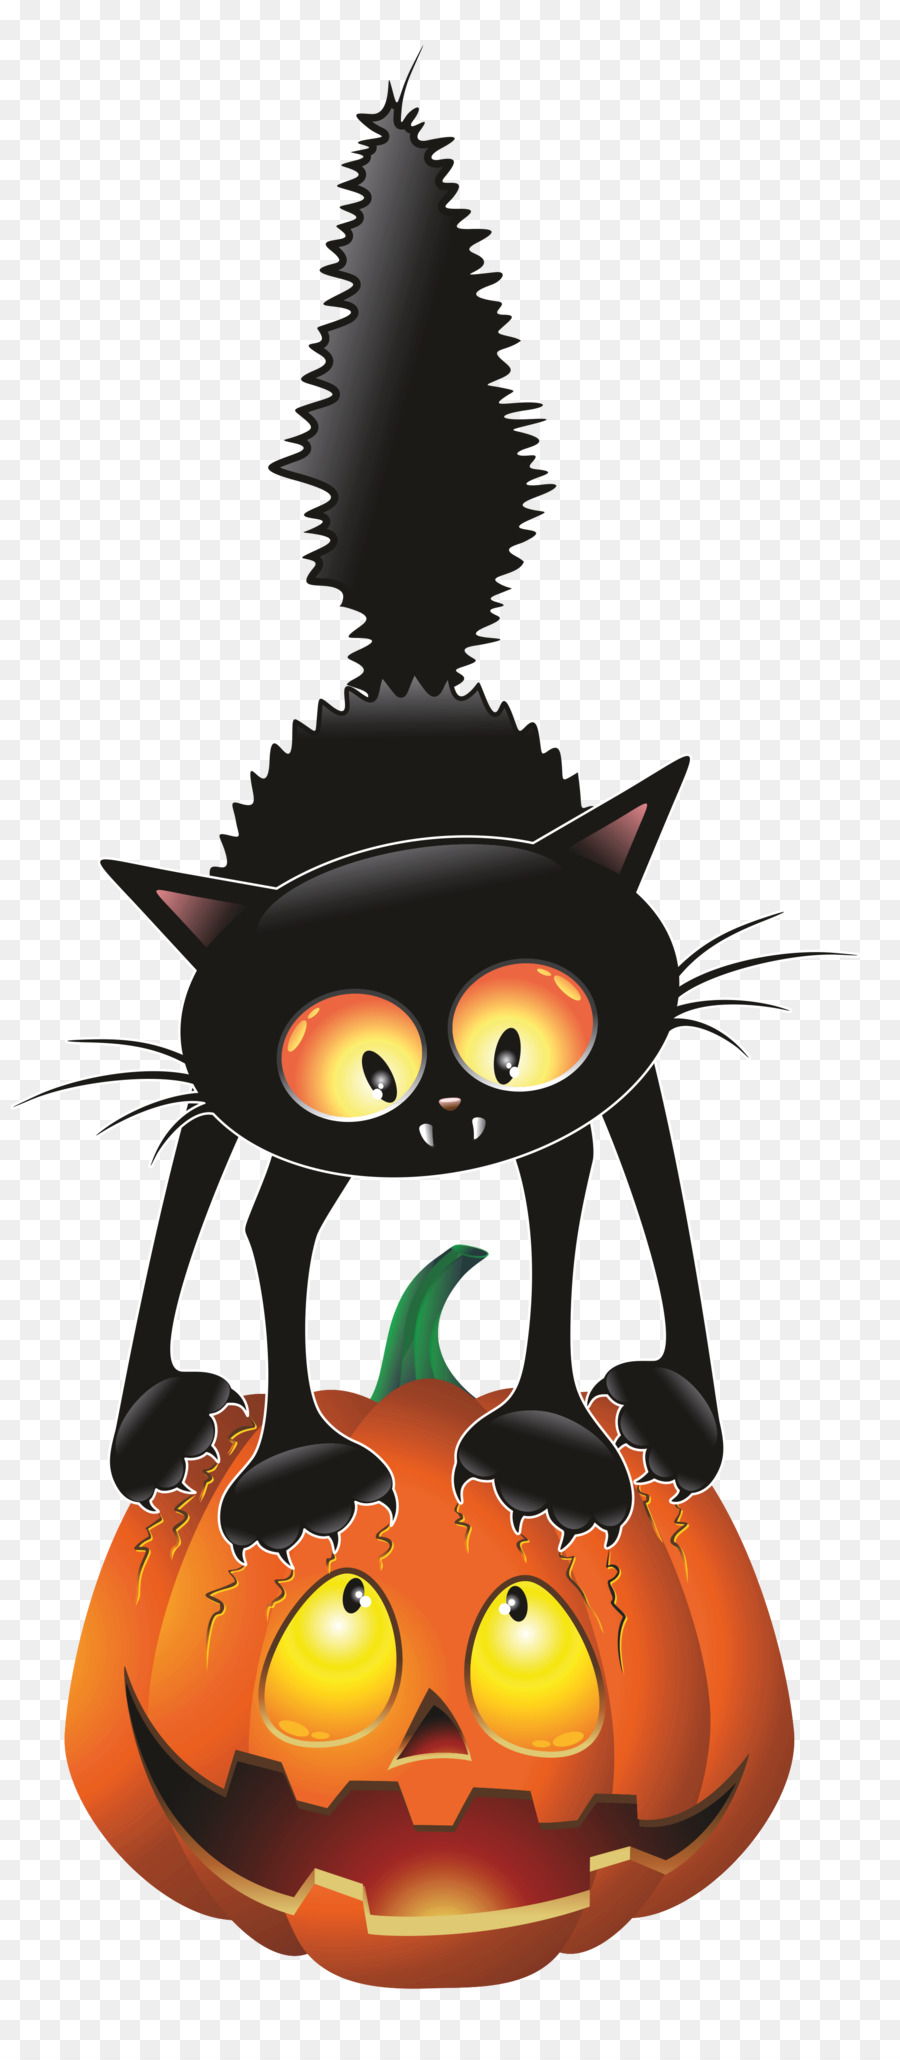 Lồng đèn quả bí ngô cùng mèo đen